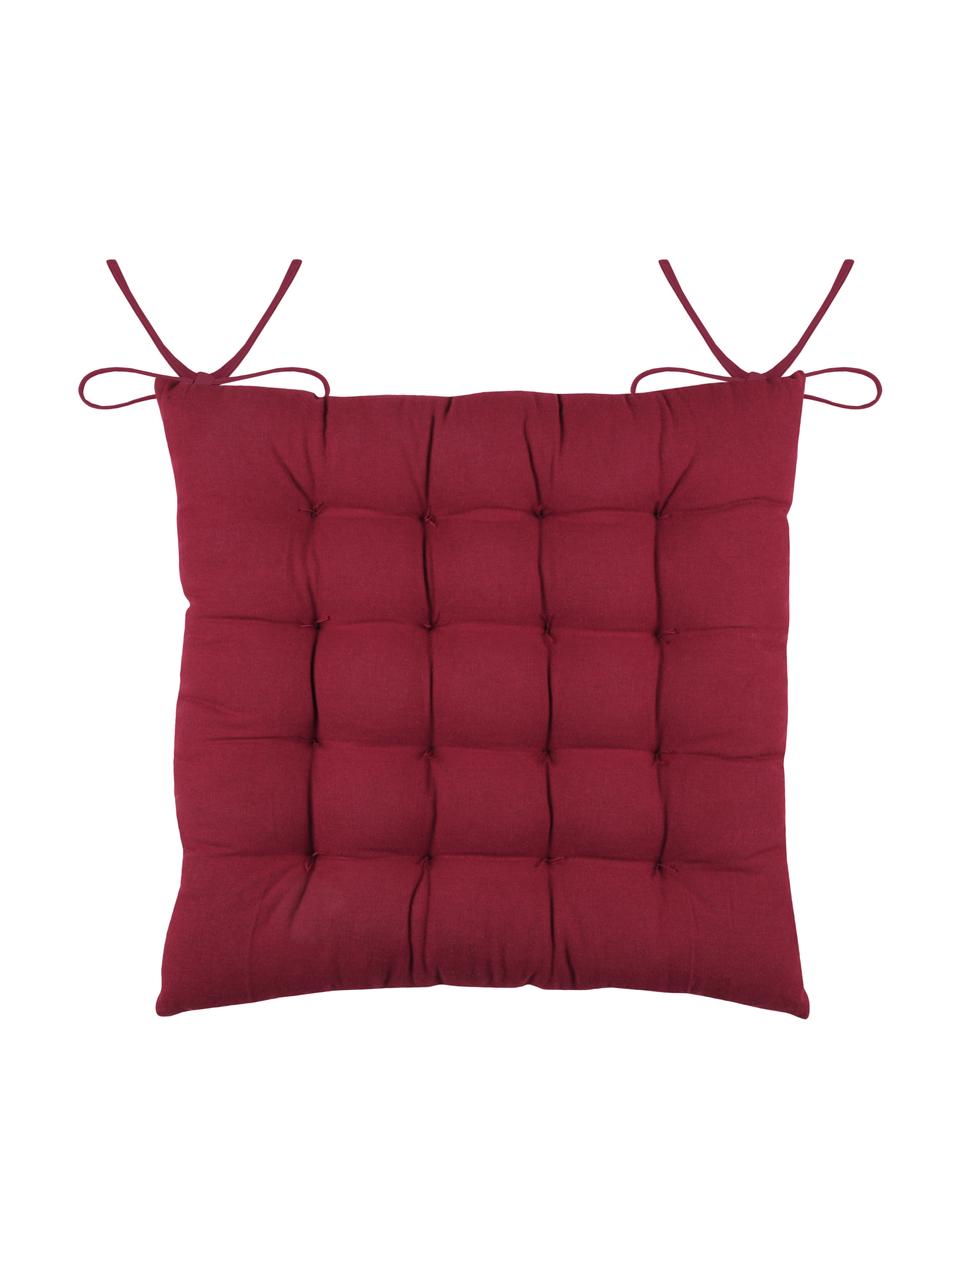 Dubbelzijdig zitkussen Galette in rood/wit, 100% katoen, Rood, wit, 40 x 40 cm